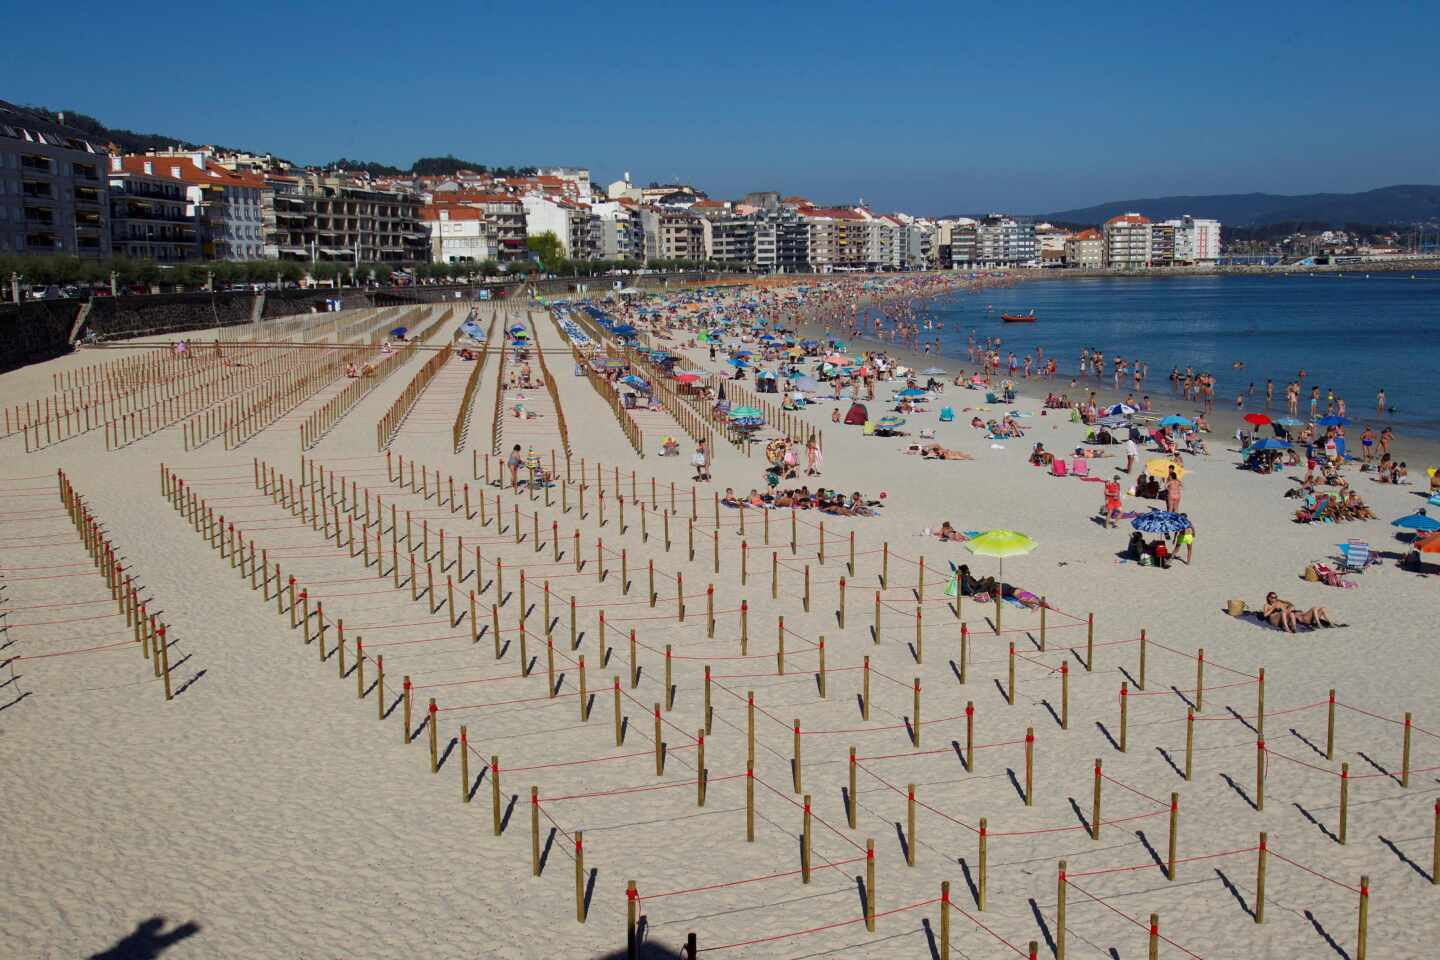 La playa de Sanxenxo (Pontevedra) con parcelas para bañistas.